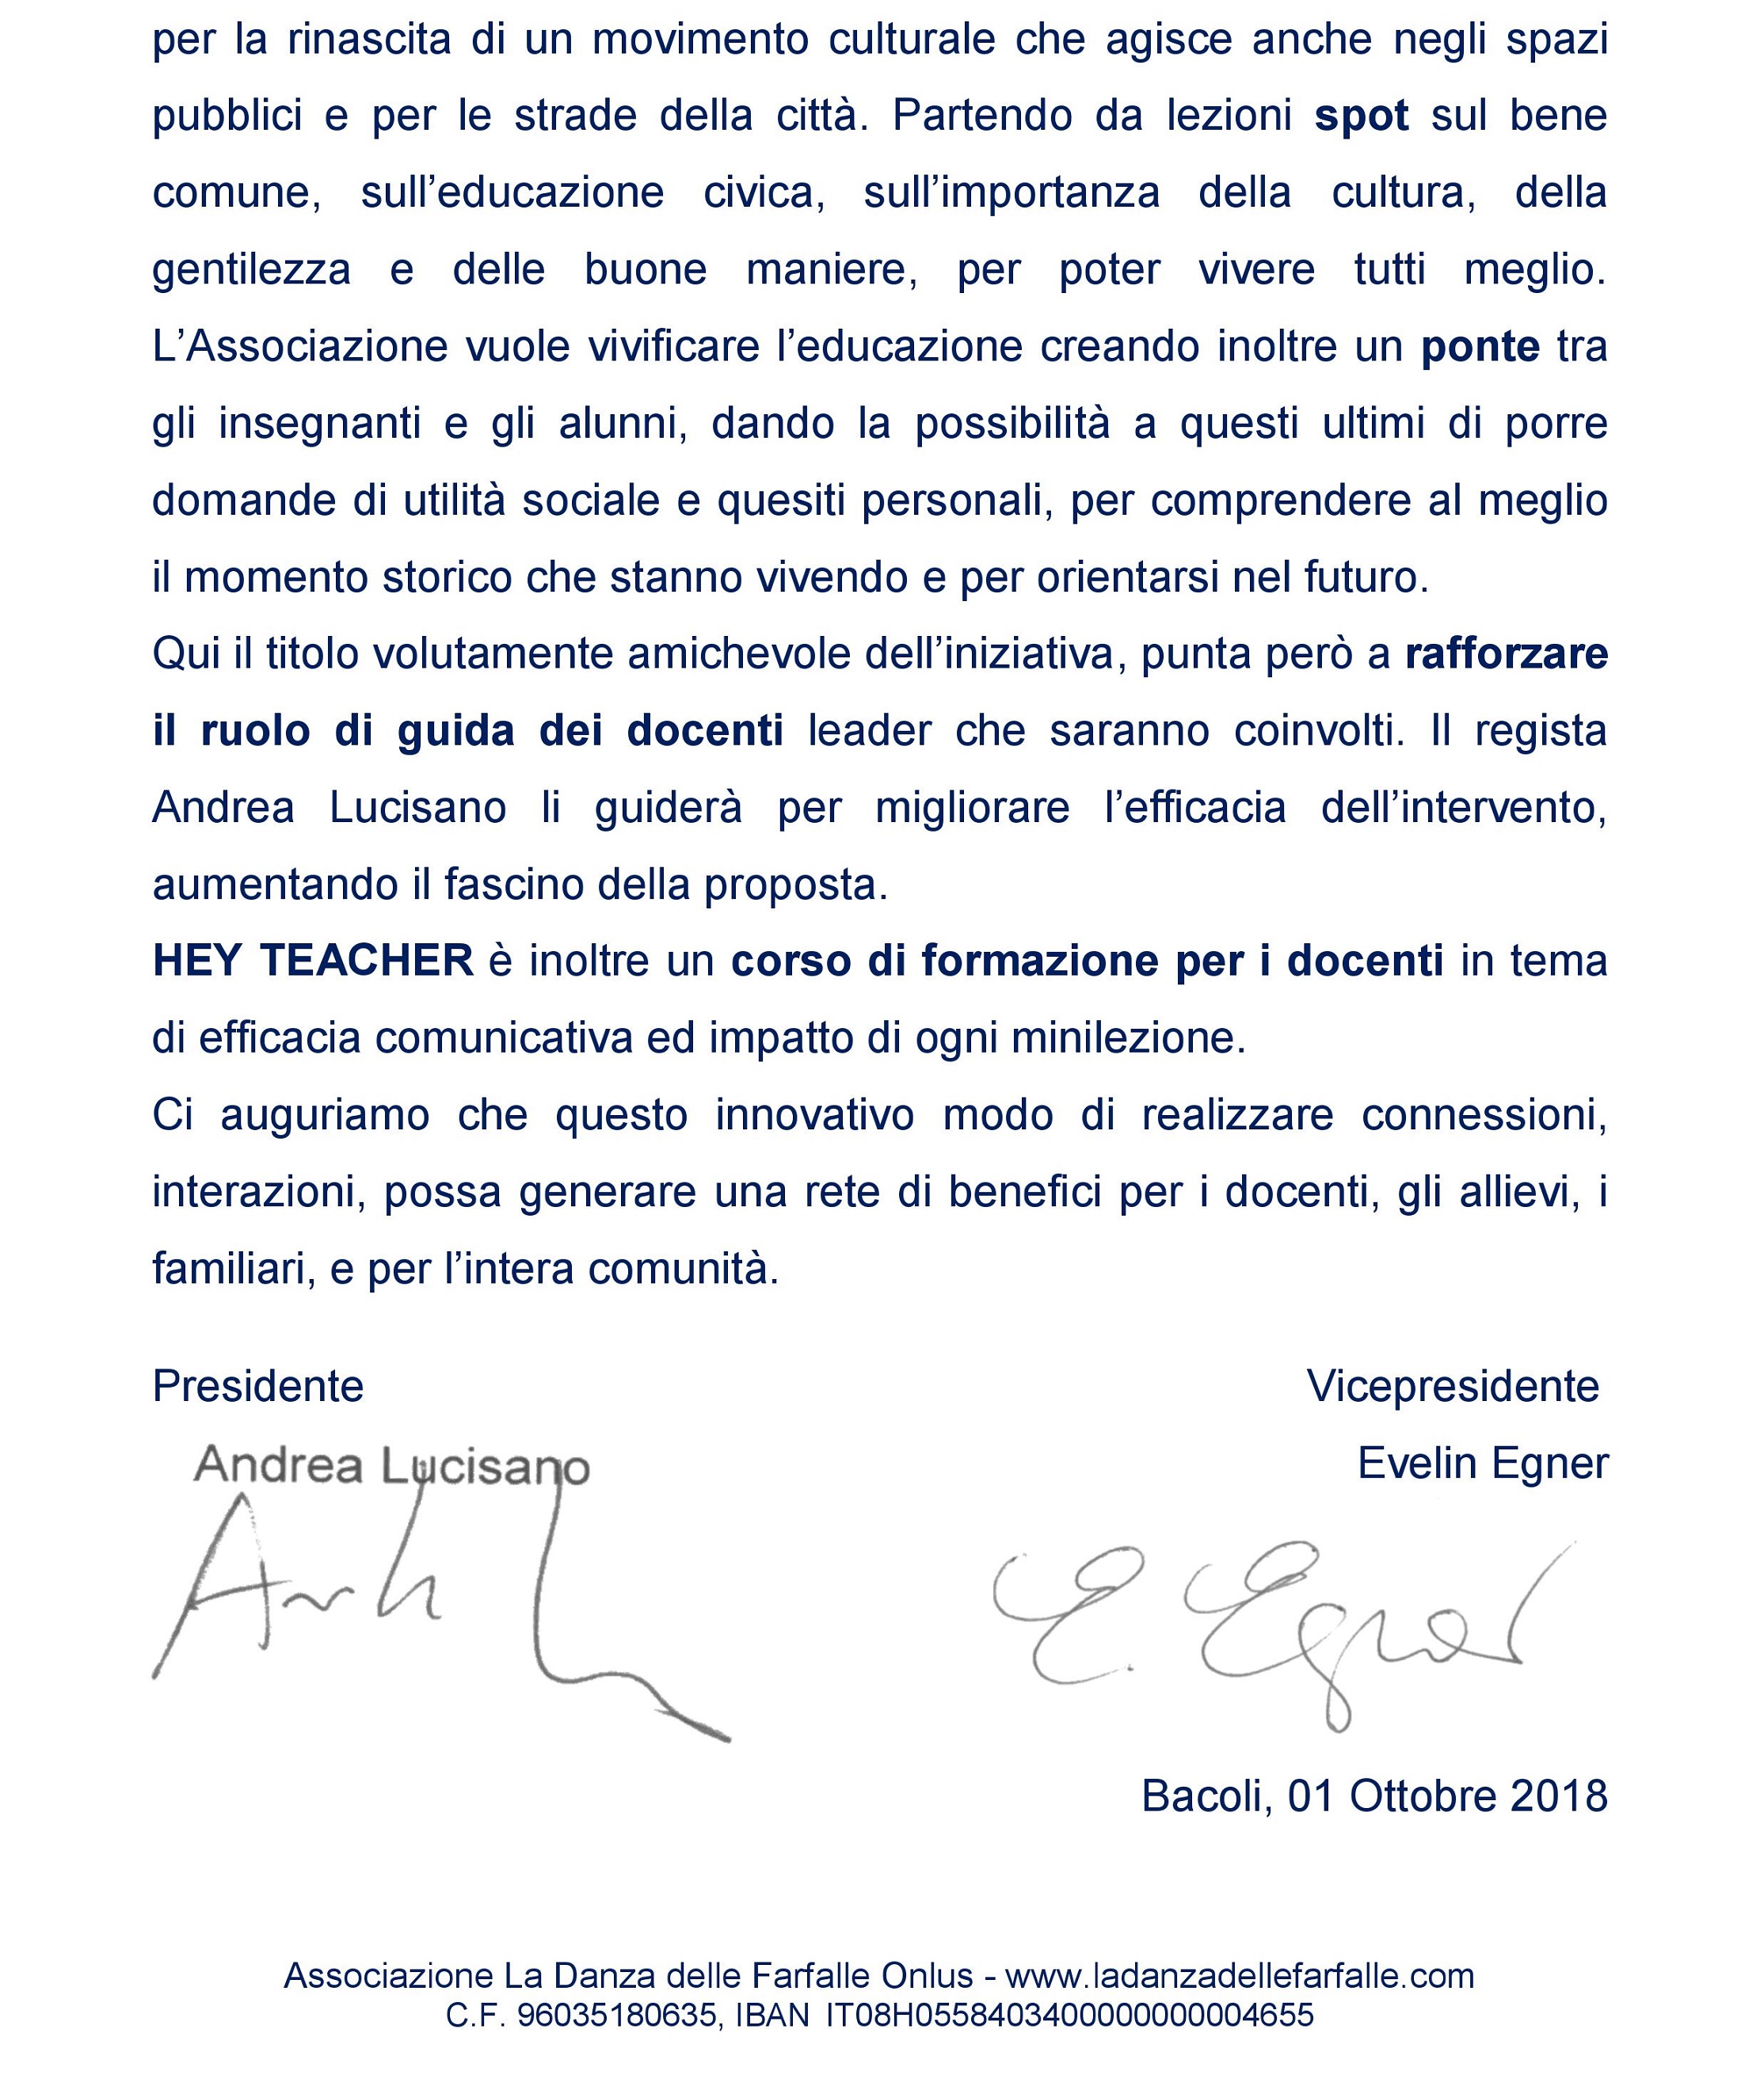 Progetto-HEY-TEACHER-Ass.-La-Danza-delle-Farfalle-Onlus-Andrea-Lucisano-in-collaborazione-con-VIDEOMETRÒ 2 sito